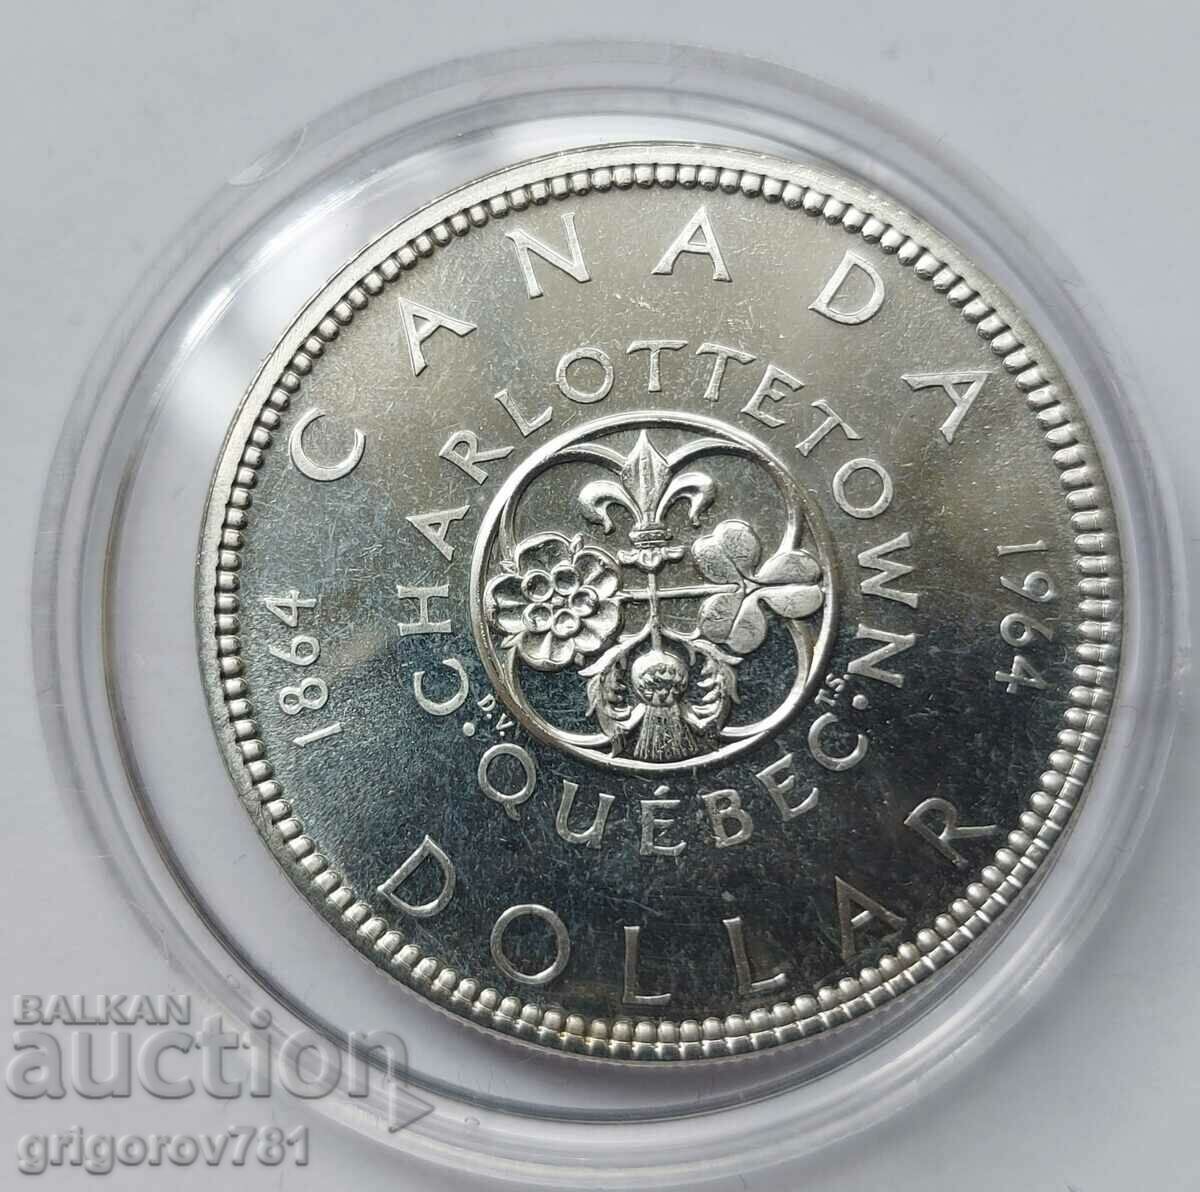 Ασημένιο 1 δολάριο Καναδάς 1964 - ασημένιο νόμισμα